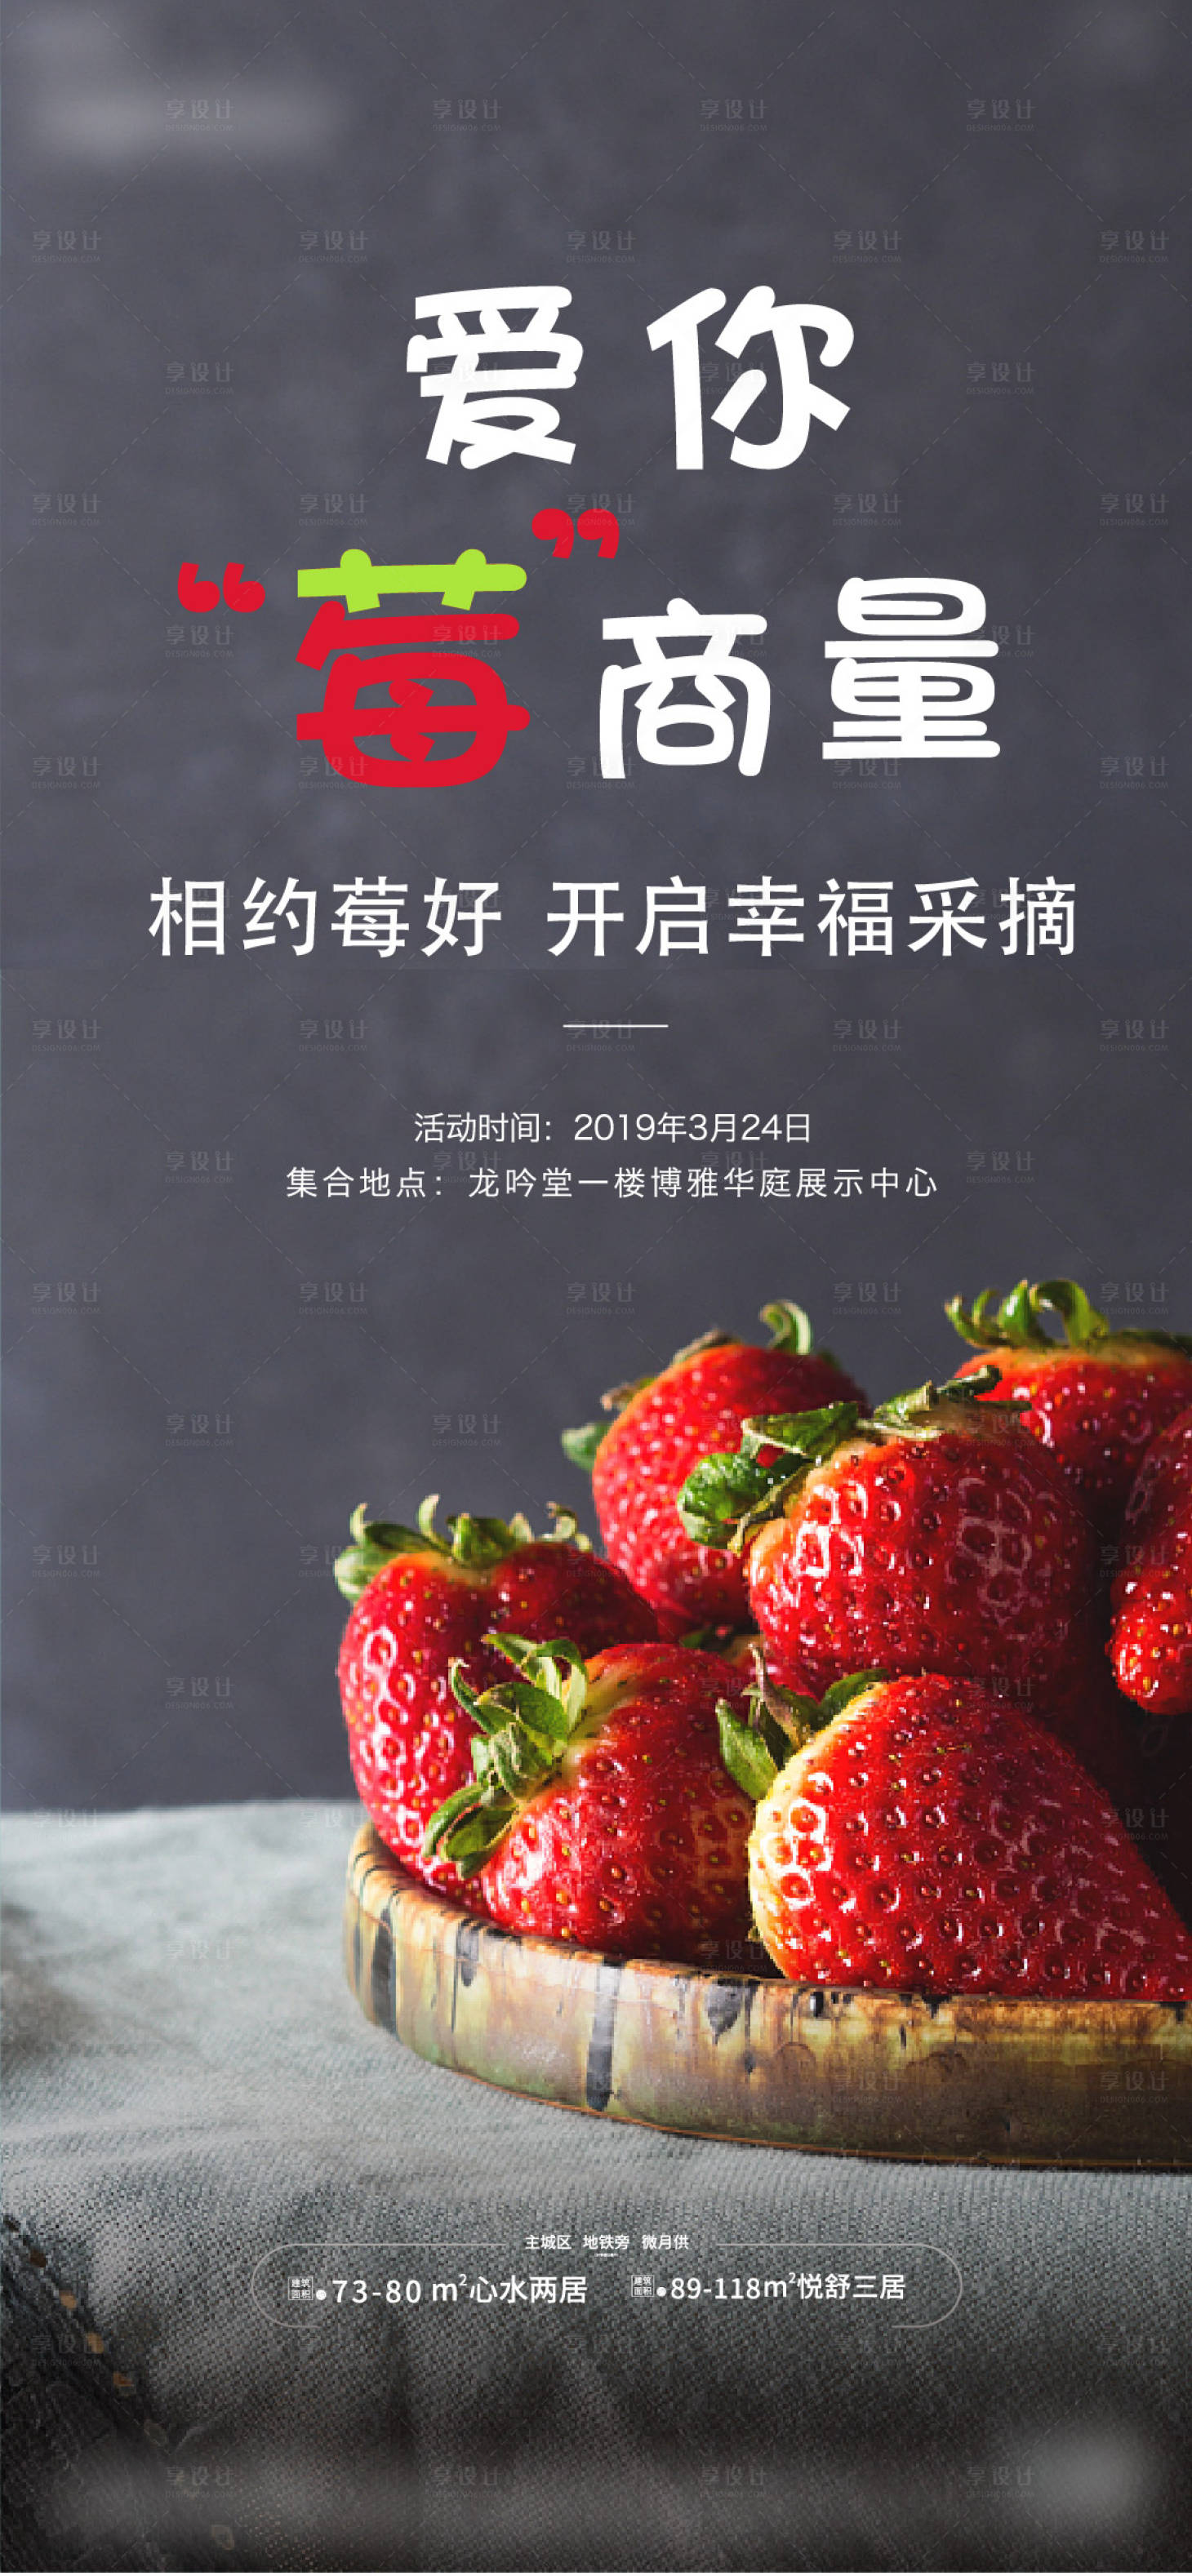 草莓活动海报